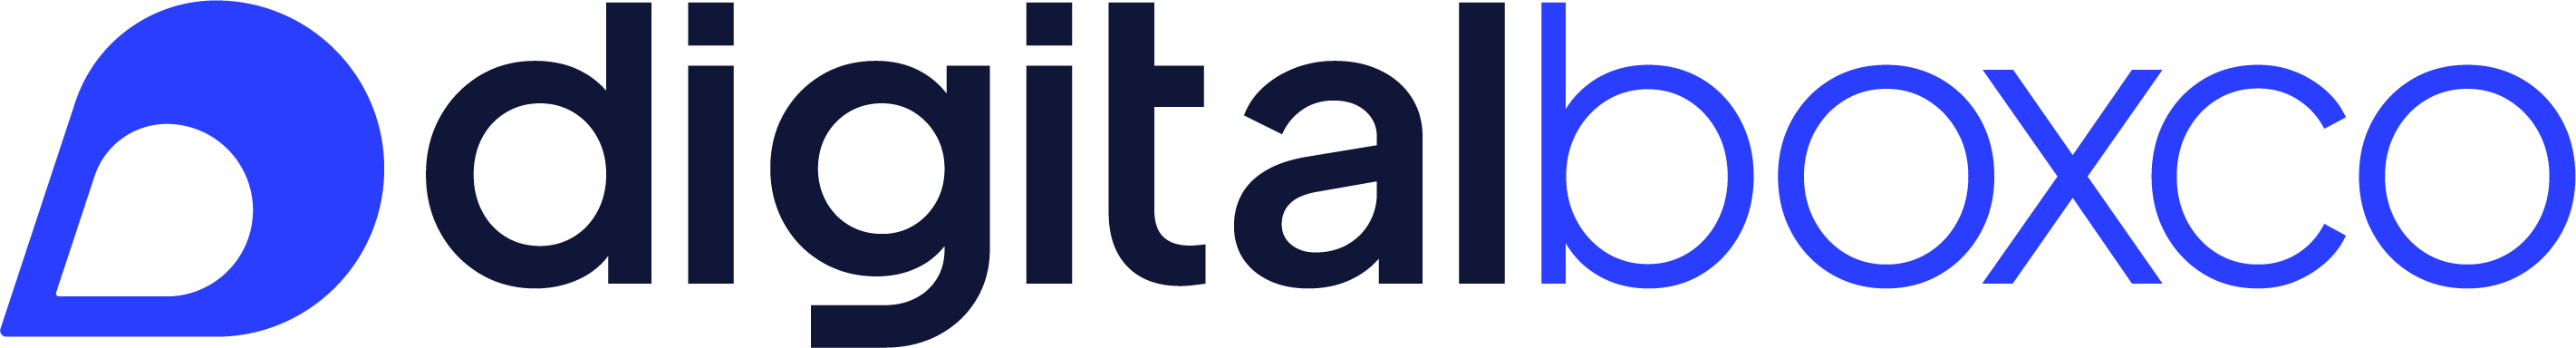 Transparent white text logo